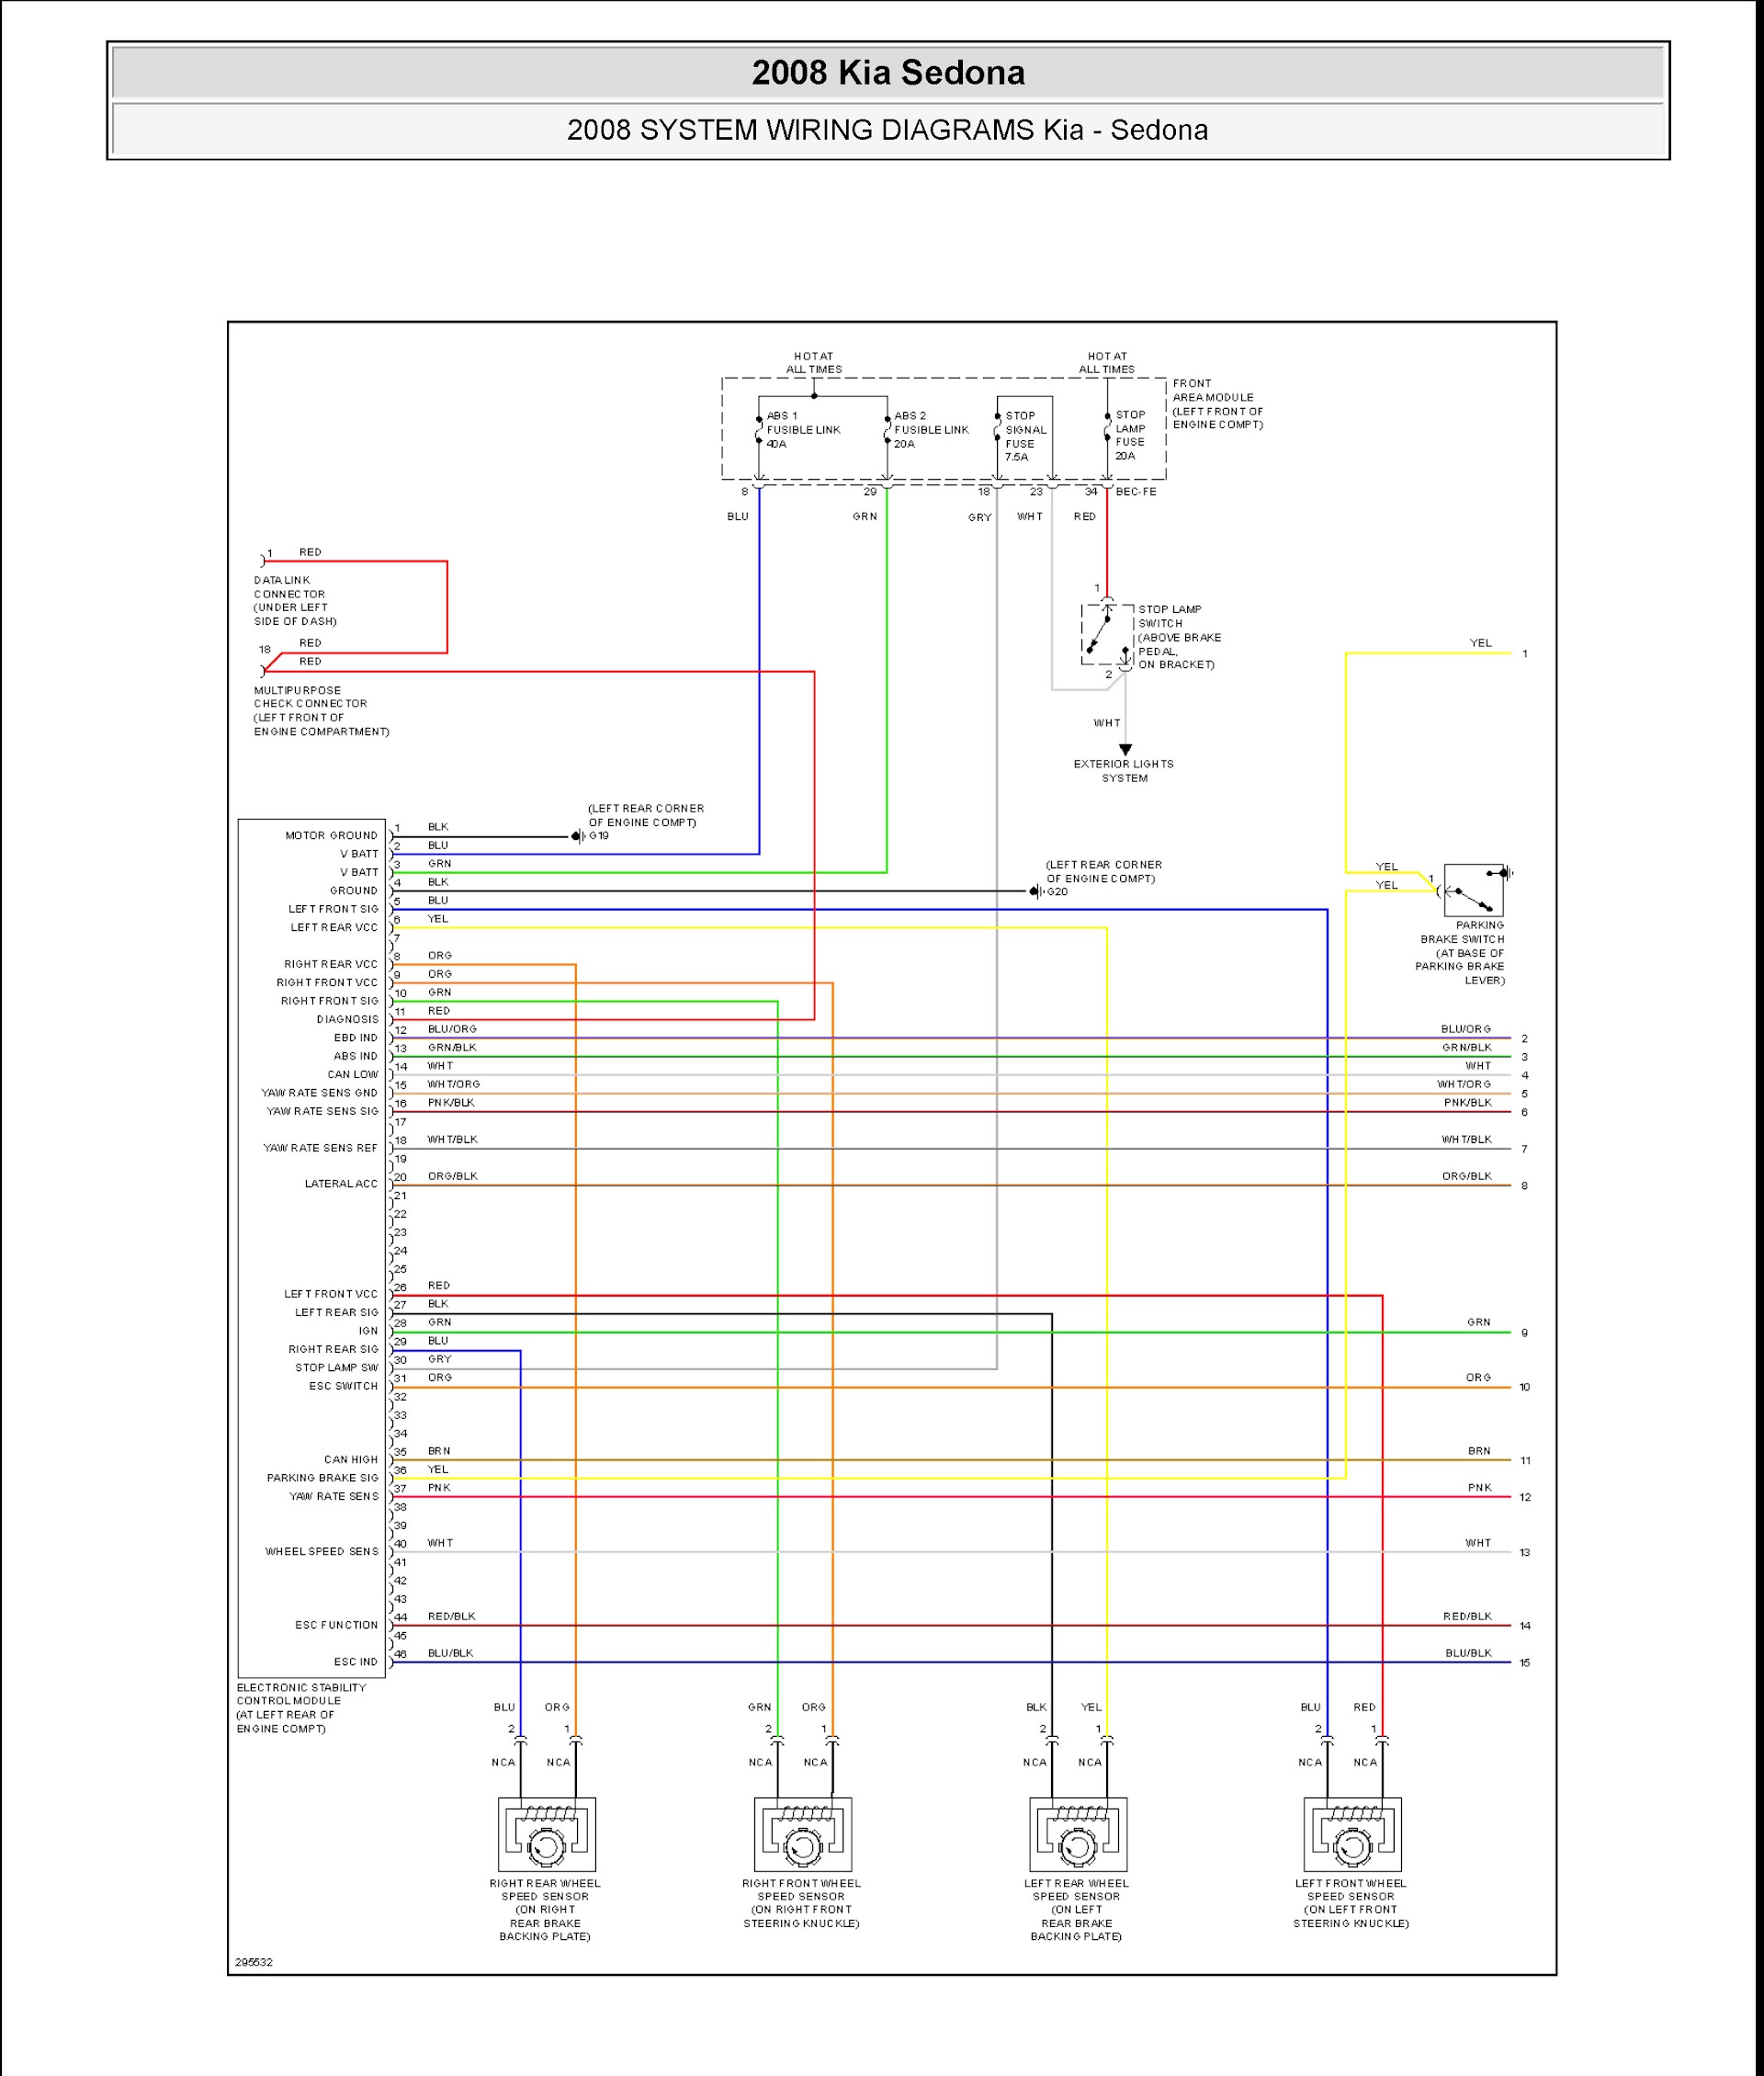 2008 Kia Sedona Repair Manual Wiring Diagram